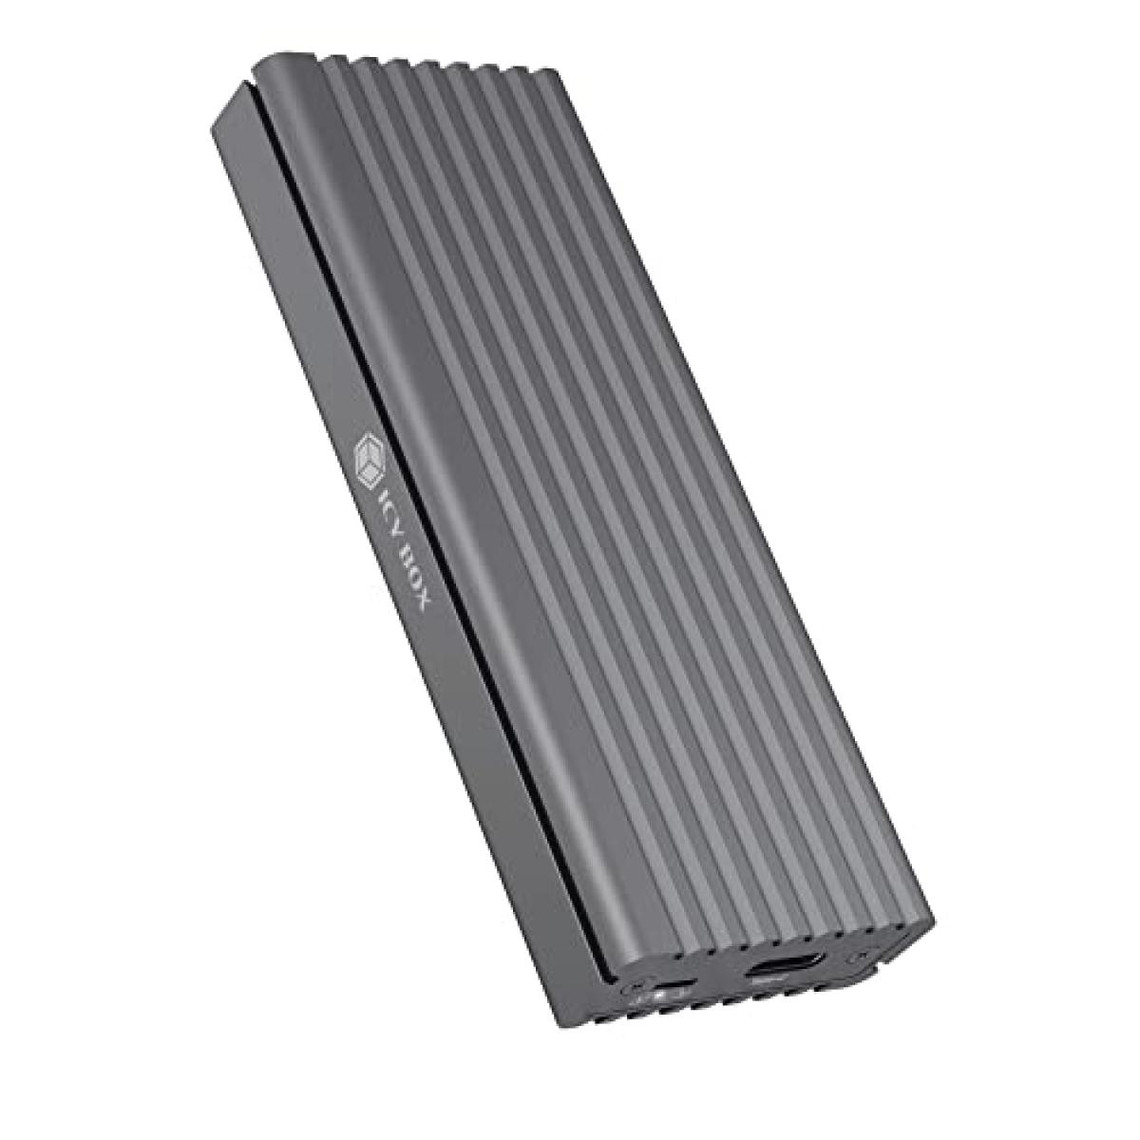 Icybox Boitier externe pour SSD M.2 NVMe IB-1817M-C31 USB 3.1 Type C (Gris)